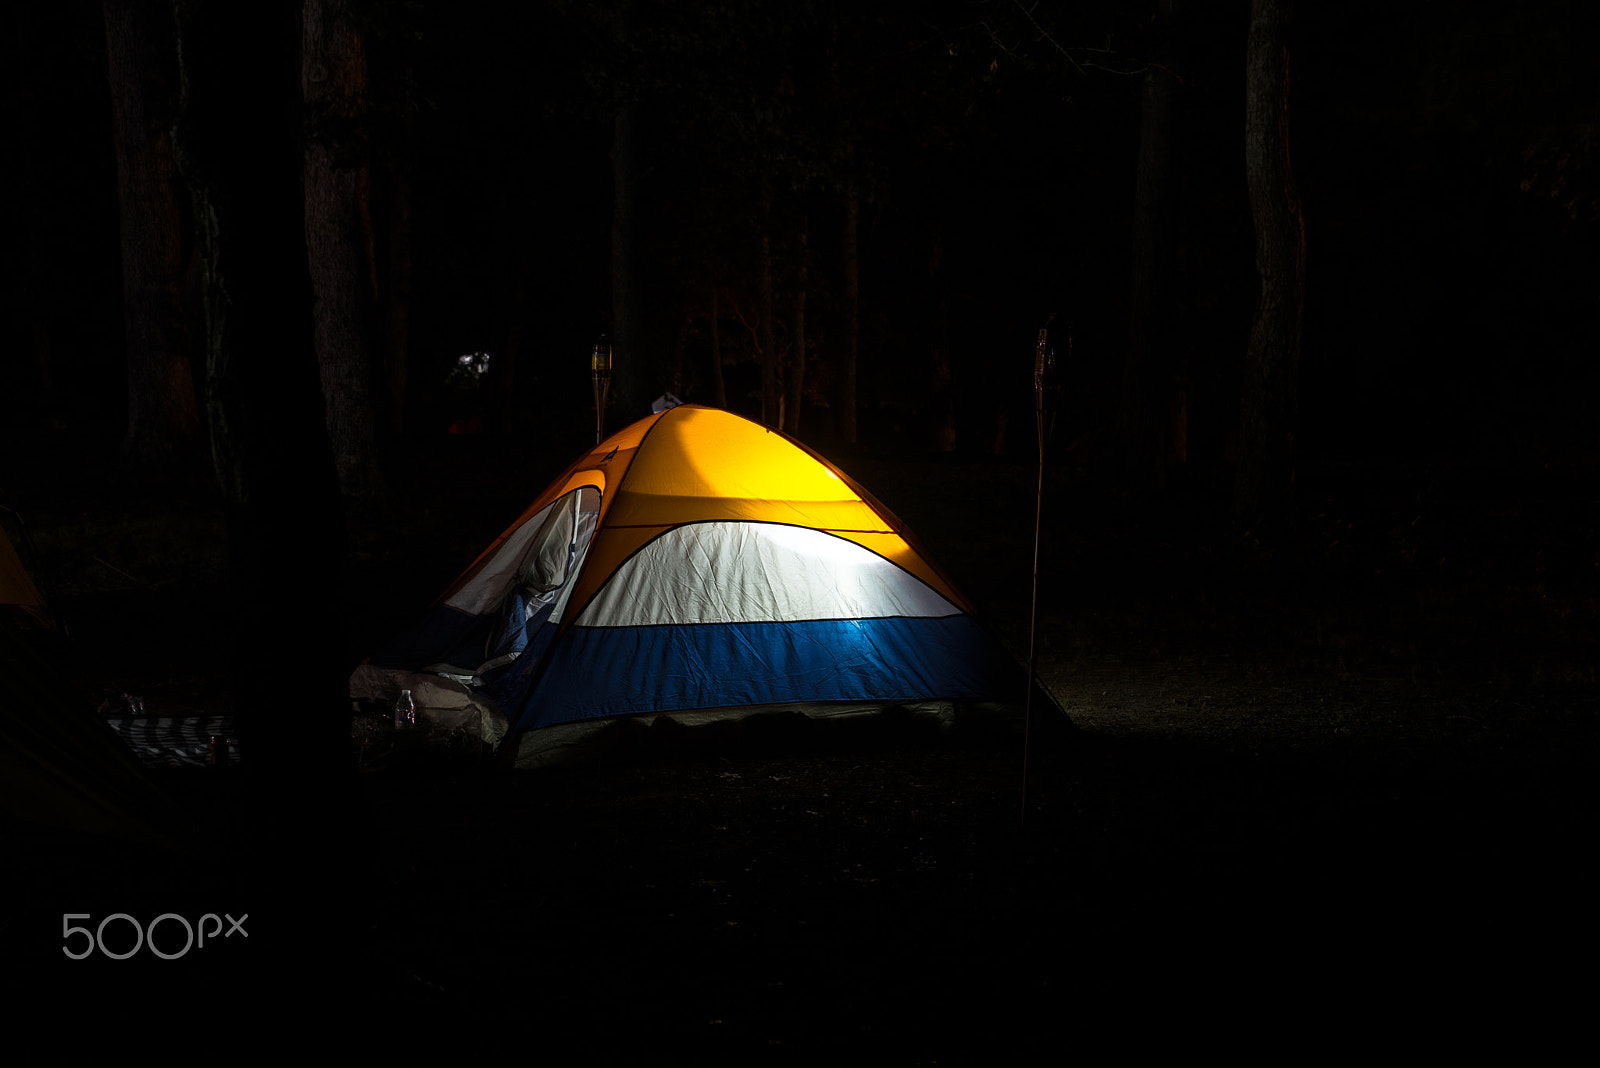 Nikon D750 sample photo. Camping at night photography